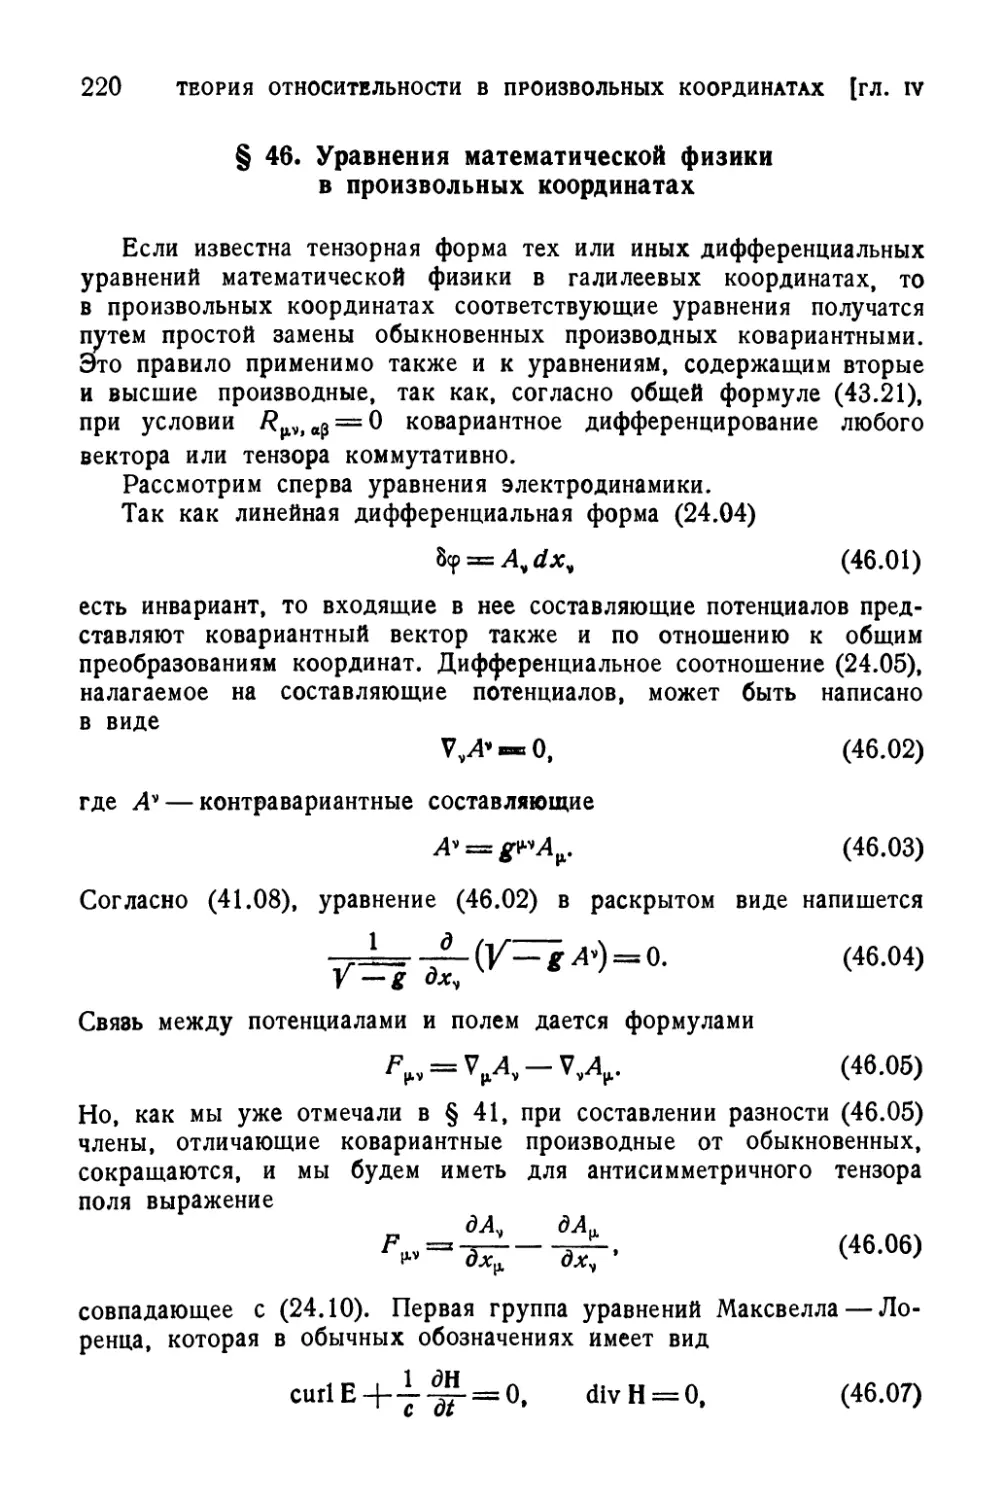 § 46. Уравнения математической физики в произвольных координатах